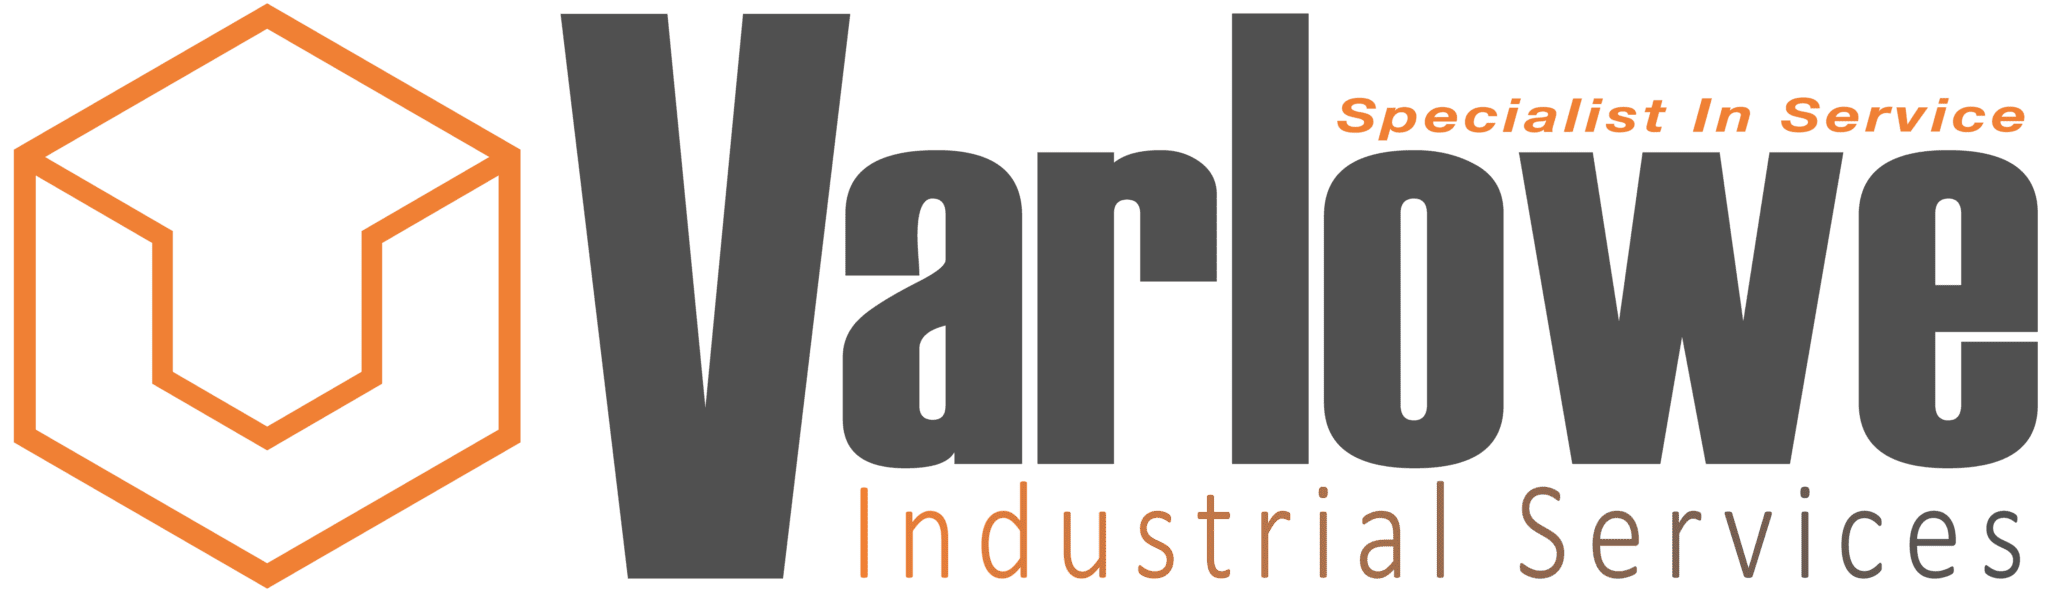 Varlowe Industrial Services